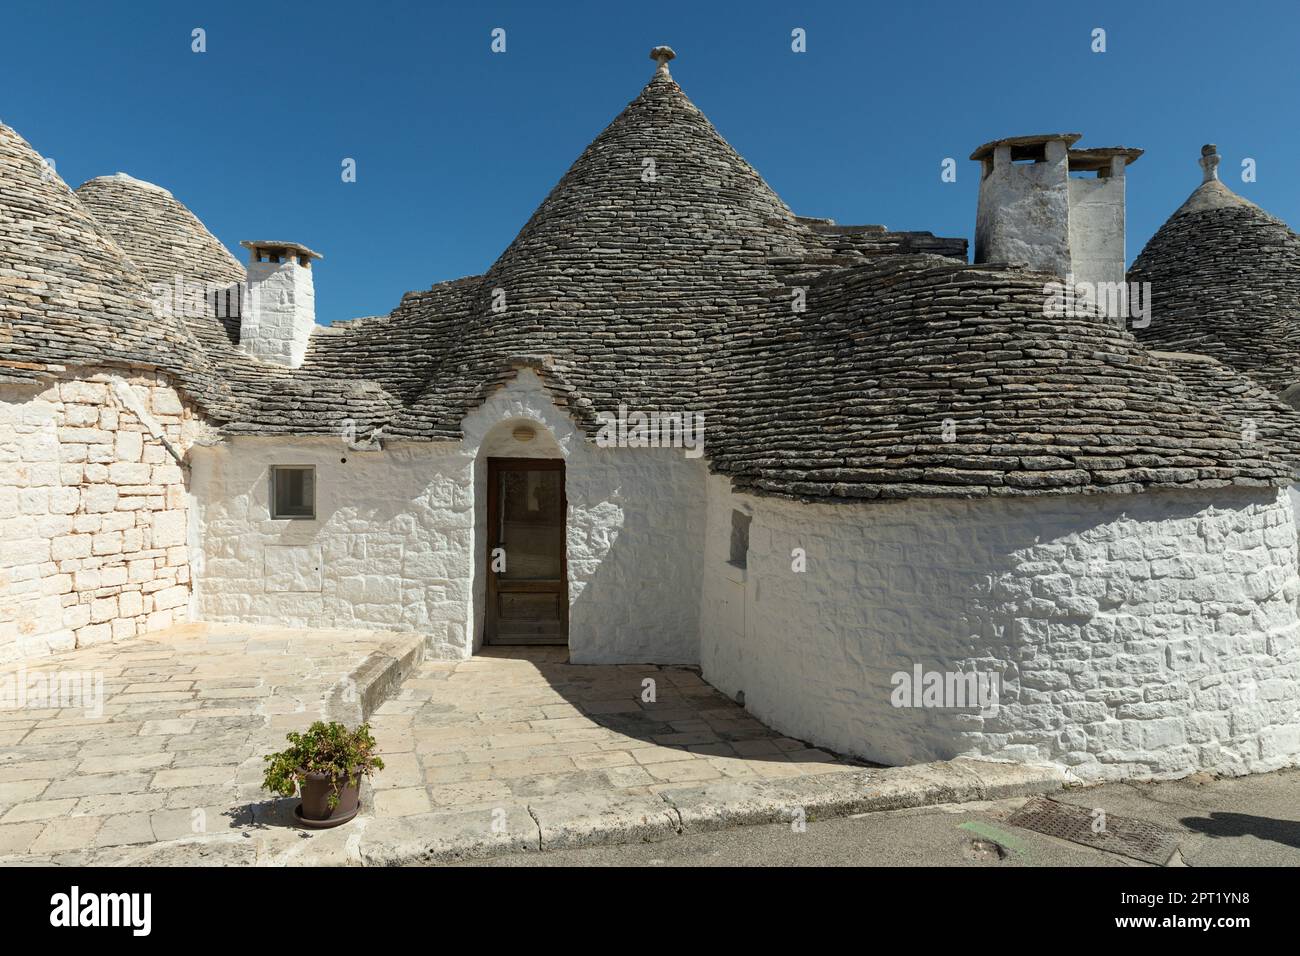 Maisons trulli typiques à Alberobello, dans les Pouilles, Italie Banque D'Images